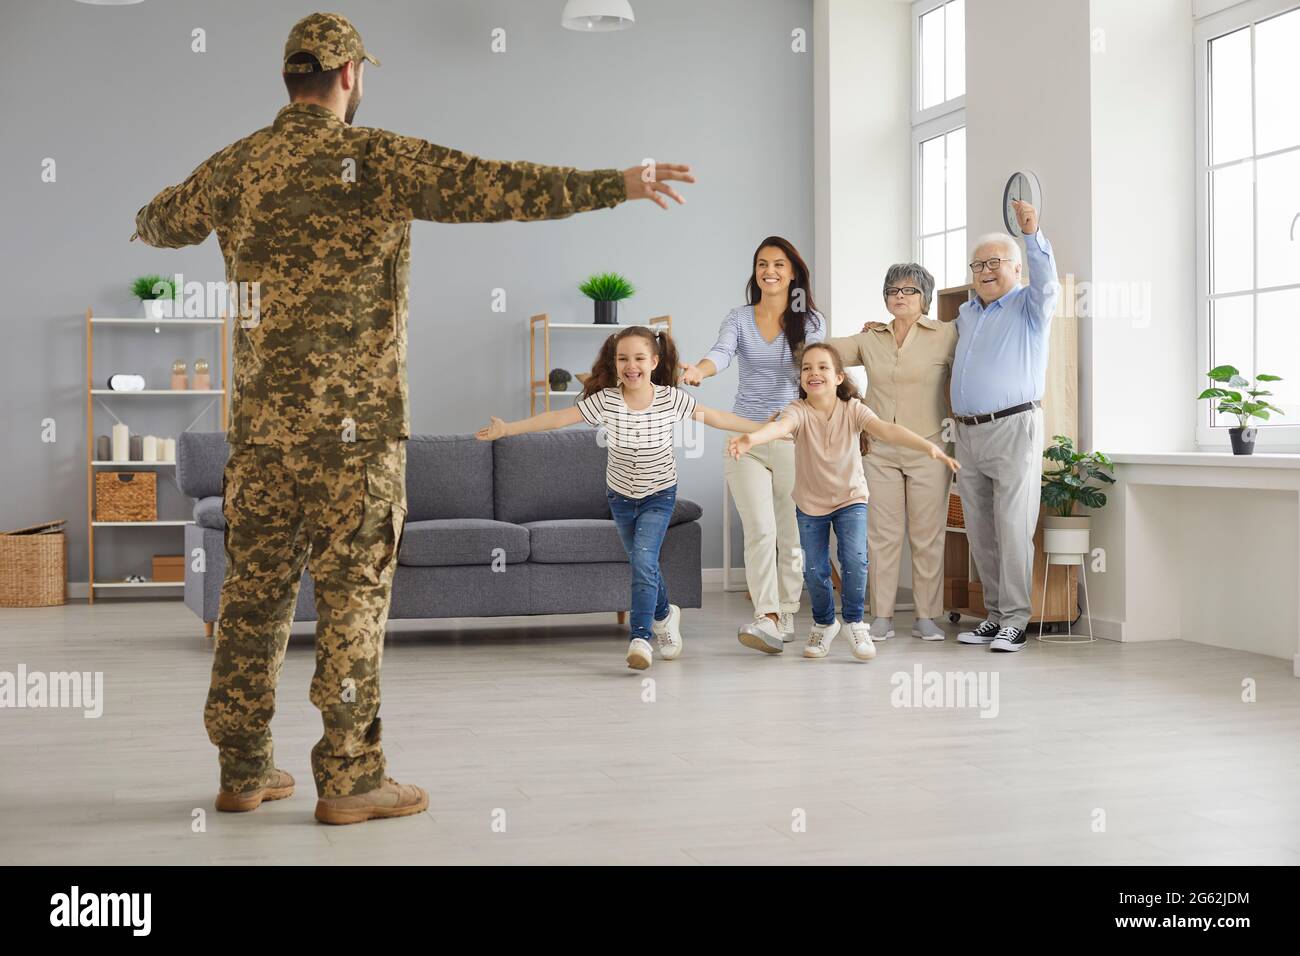 Les enfants, la femme et les parents sont heureux de voir un soldat qui revient de la maison après le service militaire Banque D'Images